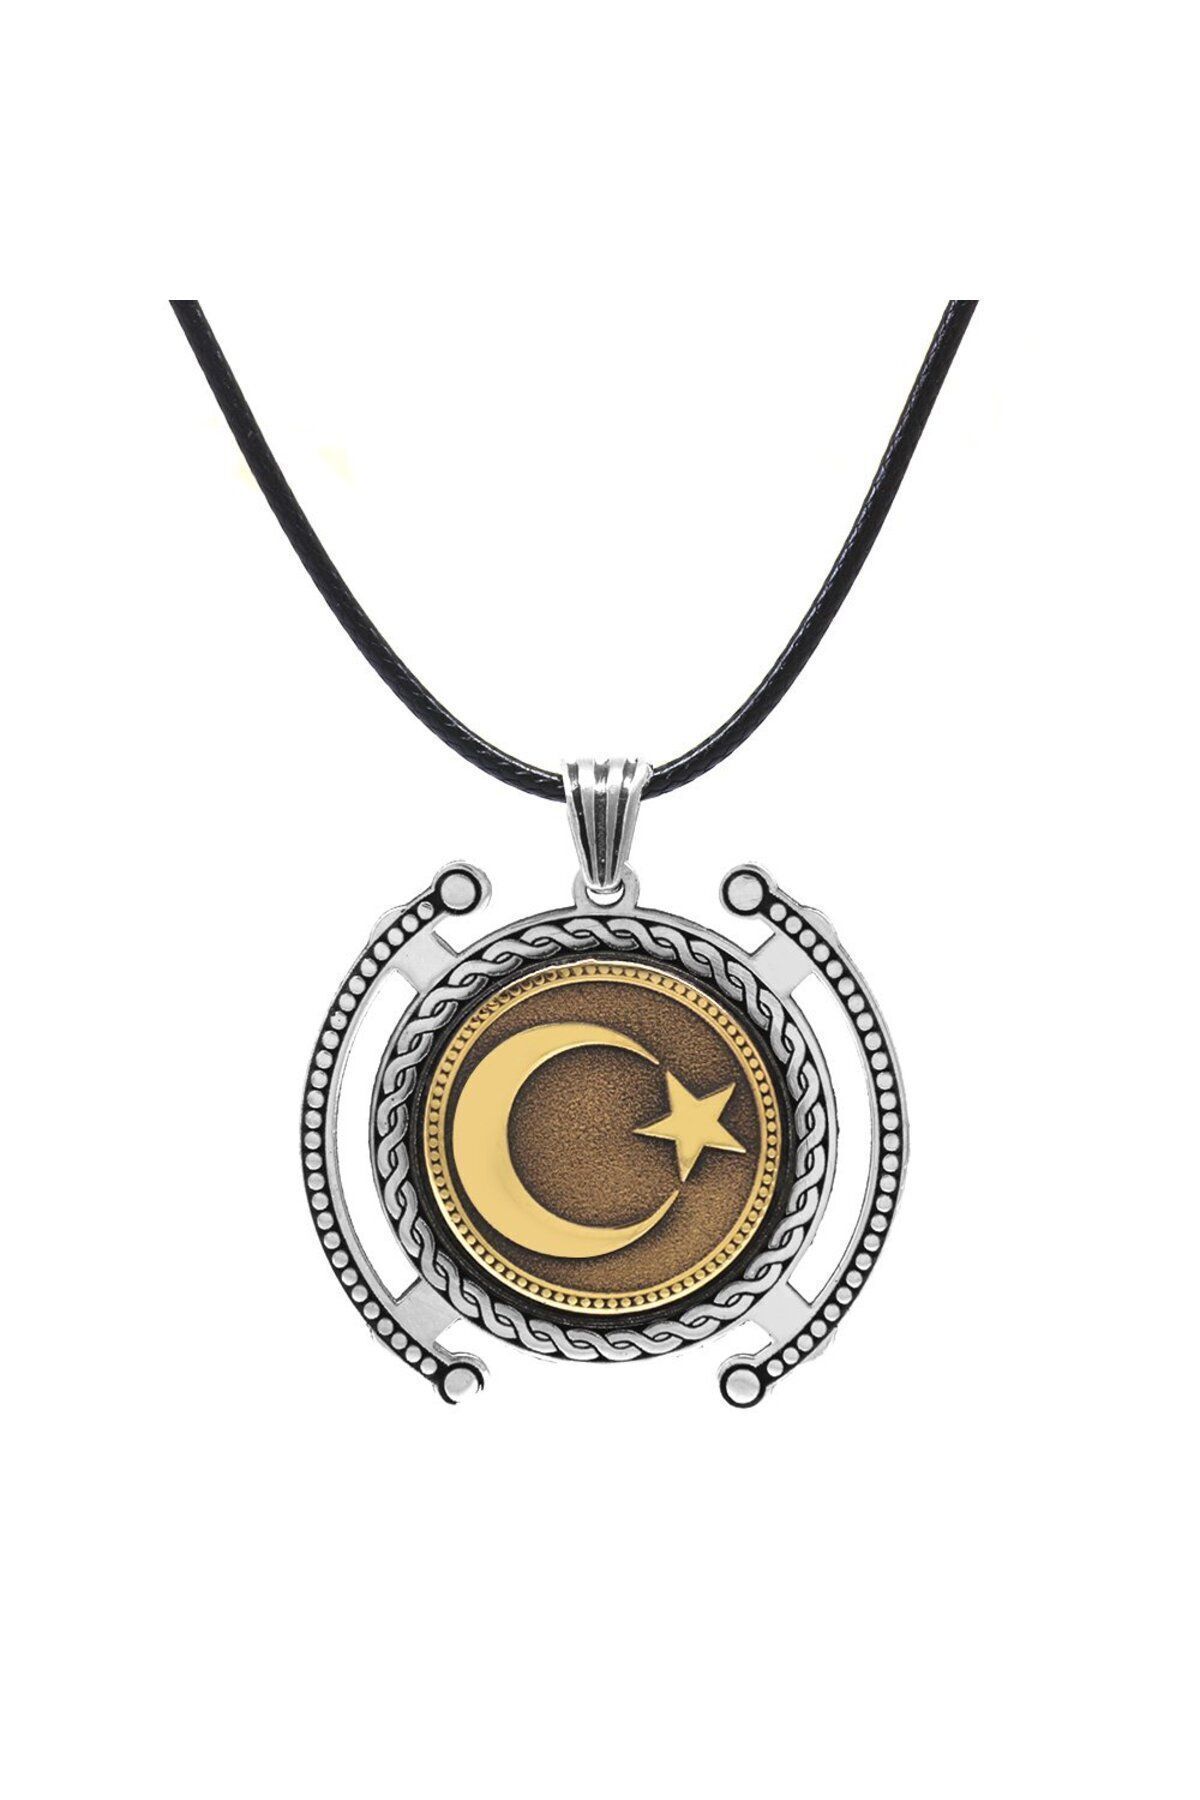 Tesbihane Ayyıldız Temalı İp Zincirli 925 Ayar Gümüş Madalyon